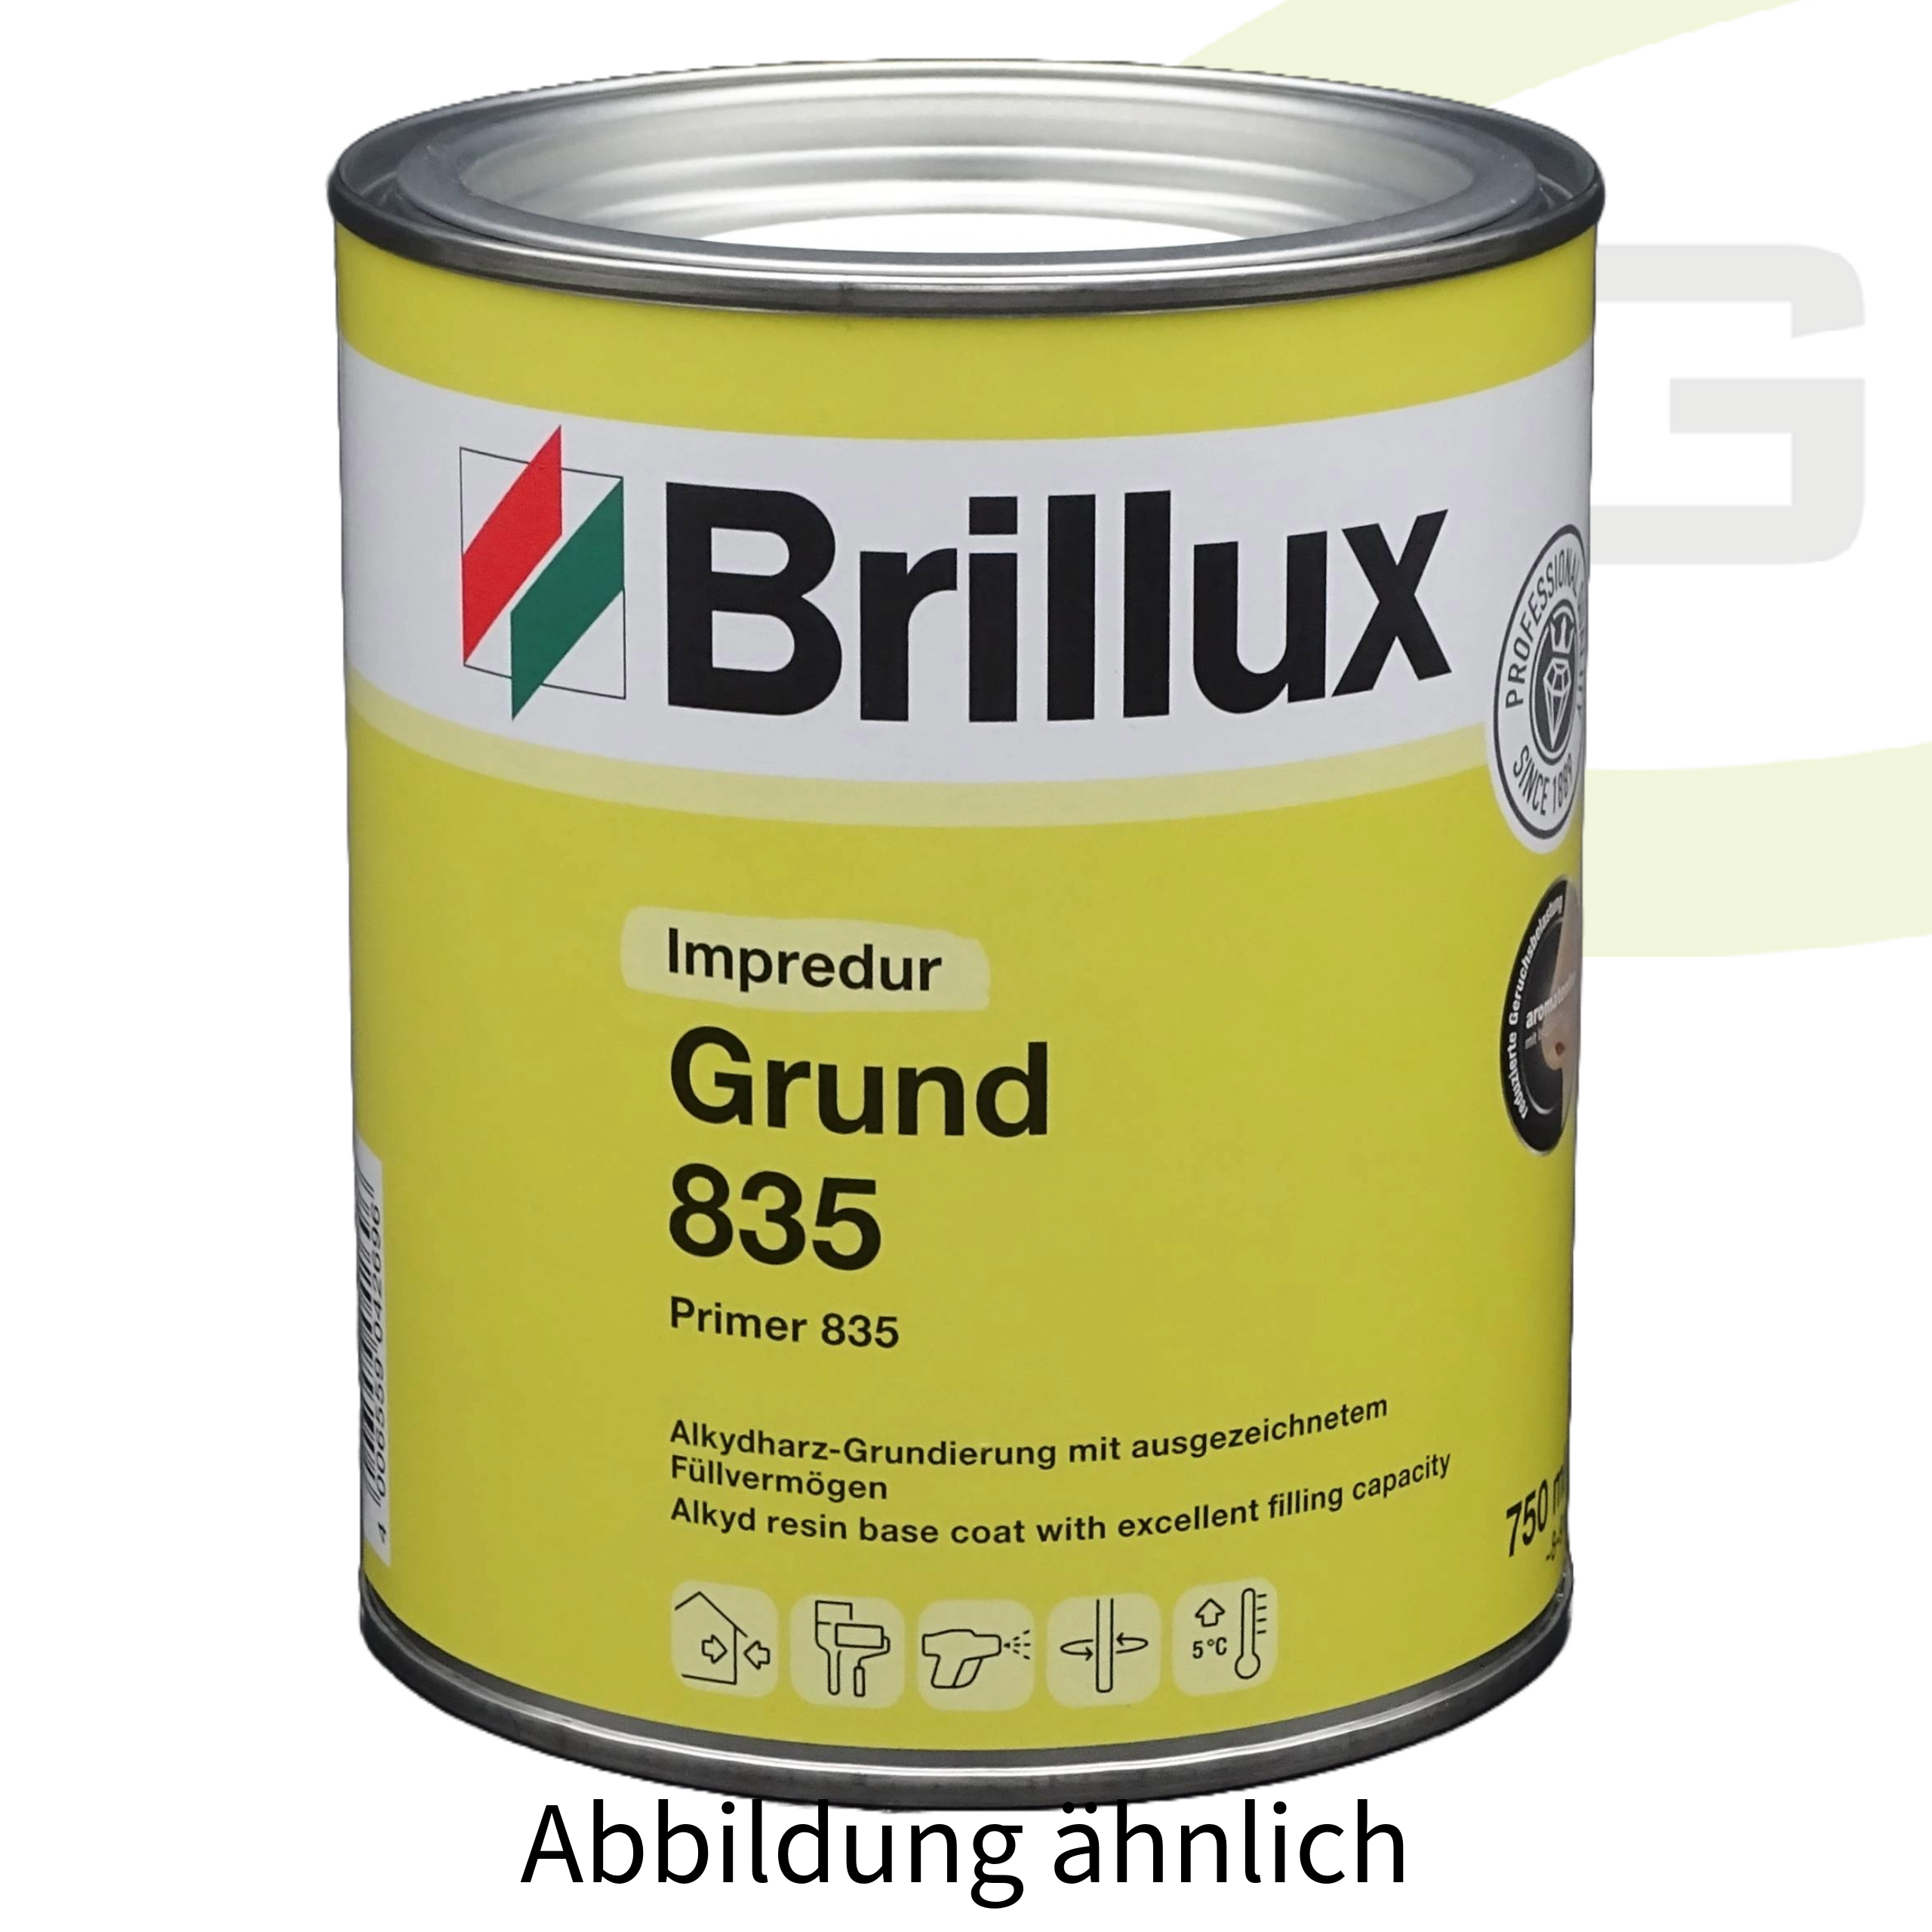 Brillux Impredur Grund 835 weiß - 375ml / Lösungsmittelhaltige Grundierung